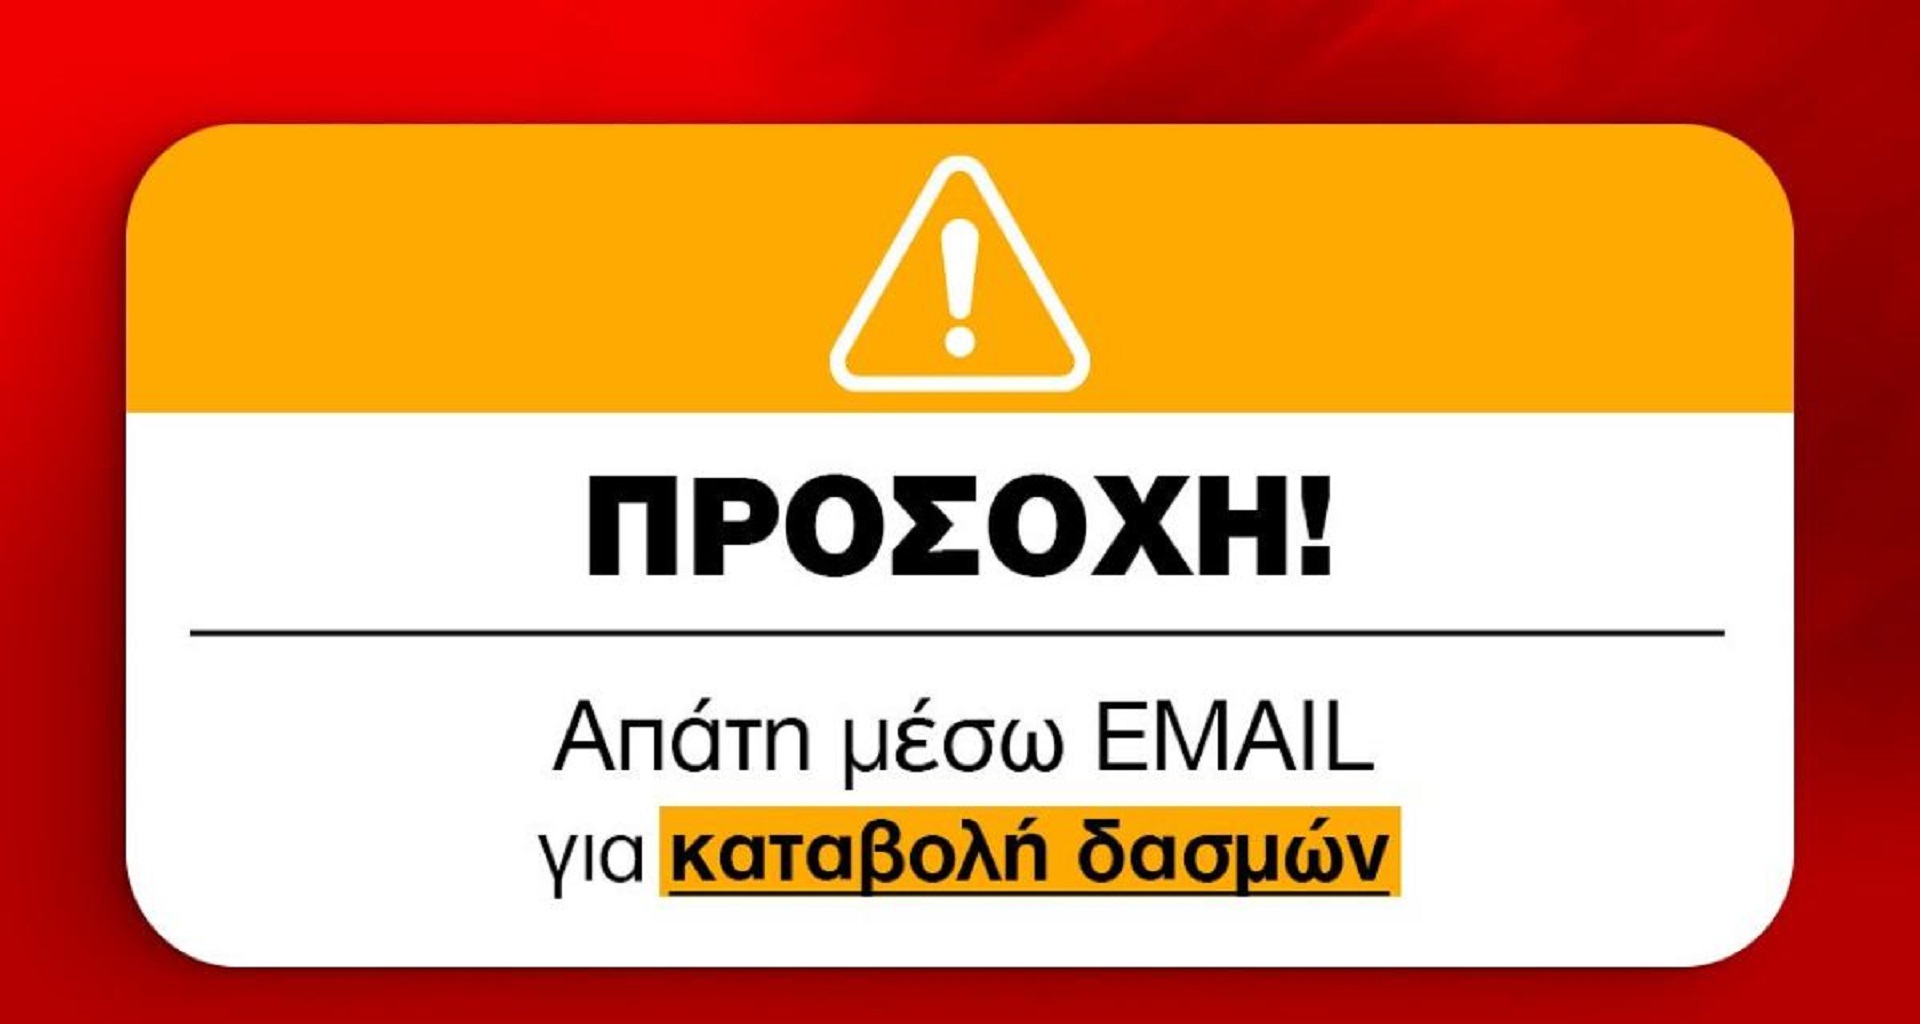 Νέα απάτη: Παριστάνουν τα Κυπριακά ταχυδρομεία – Το κοινό καλείται να είναι προσεκτικό (ΦΩΤΟ)